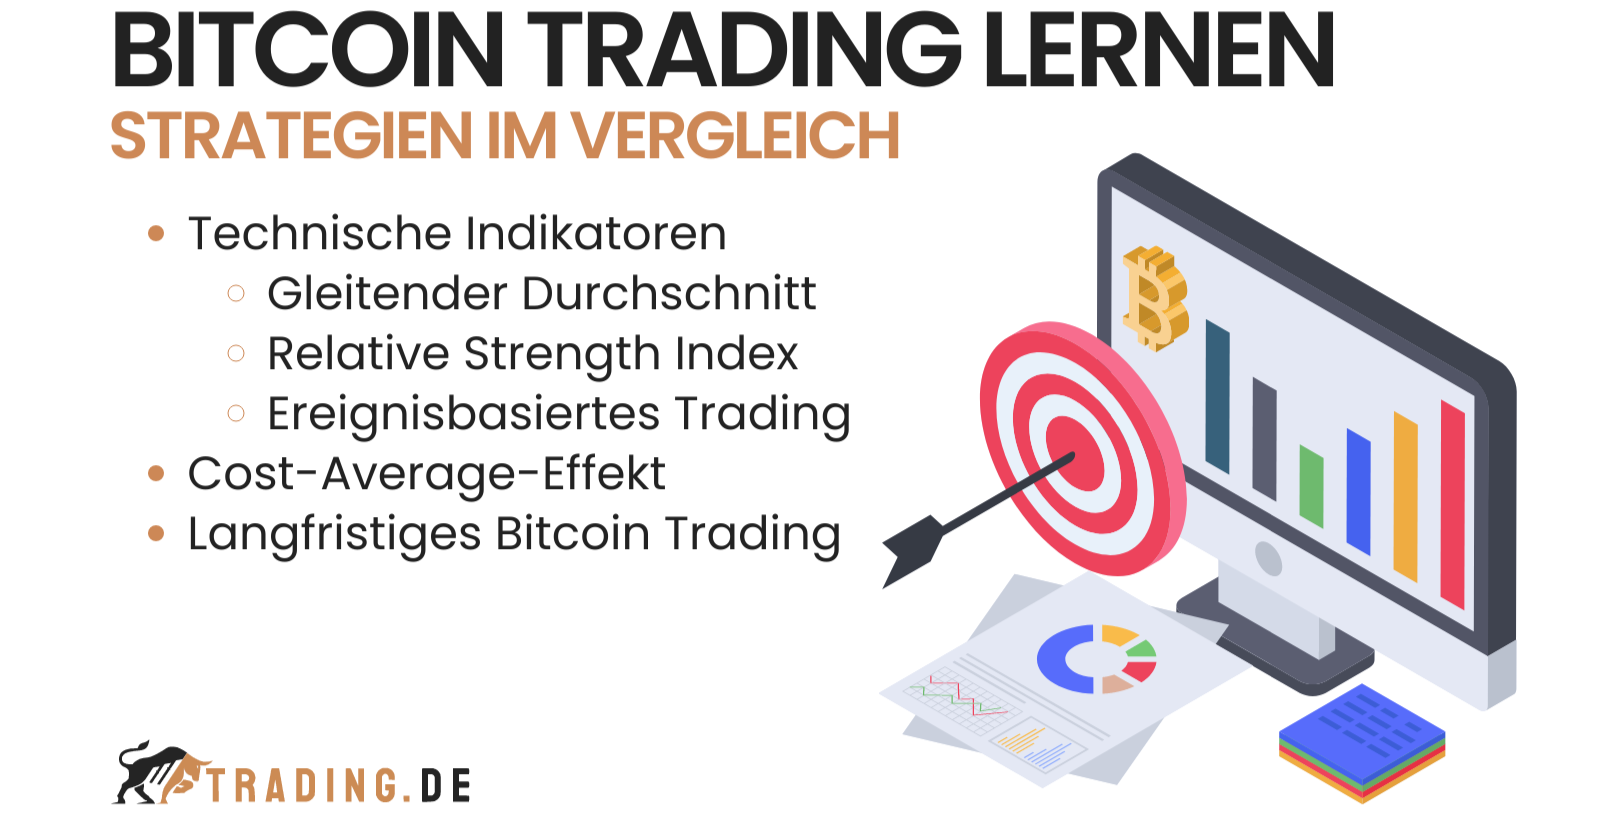 Bitcoin Trading Strategien im Vergleich